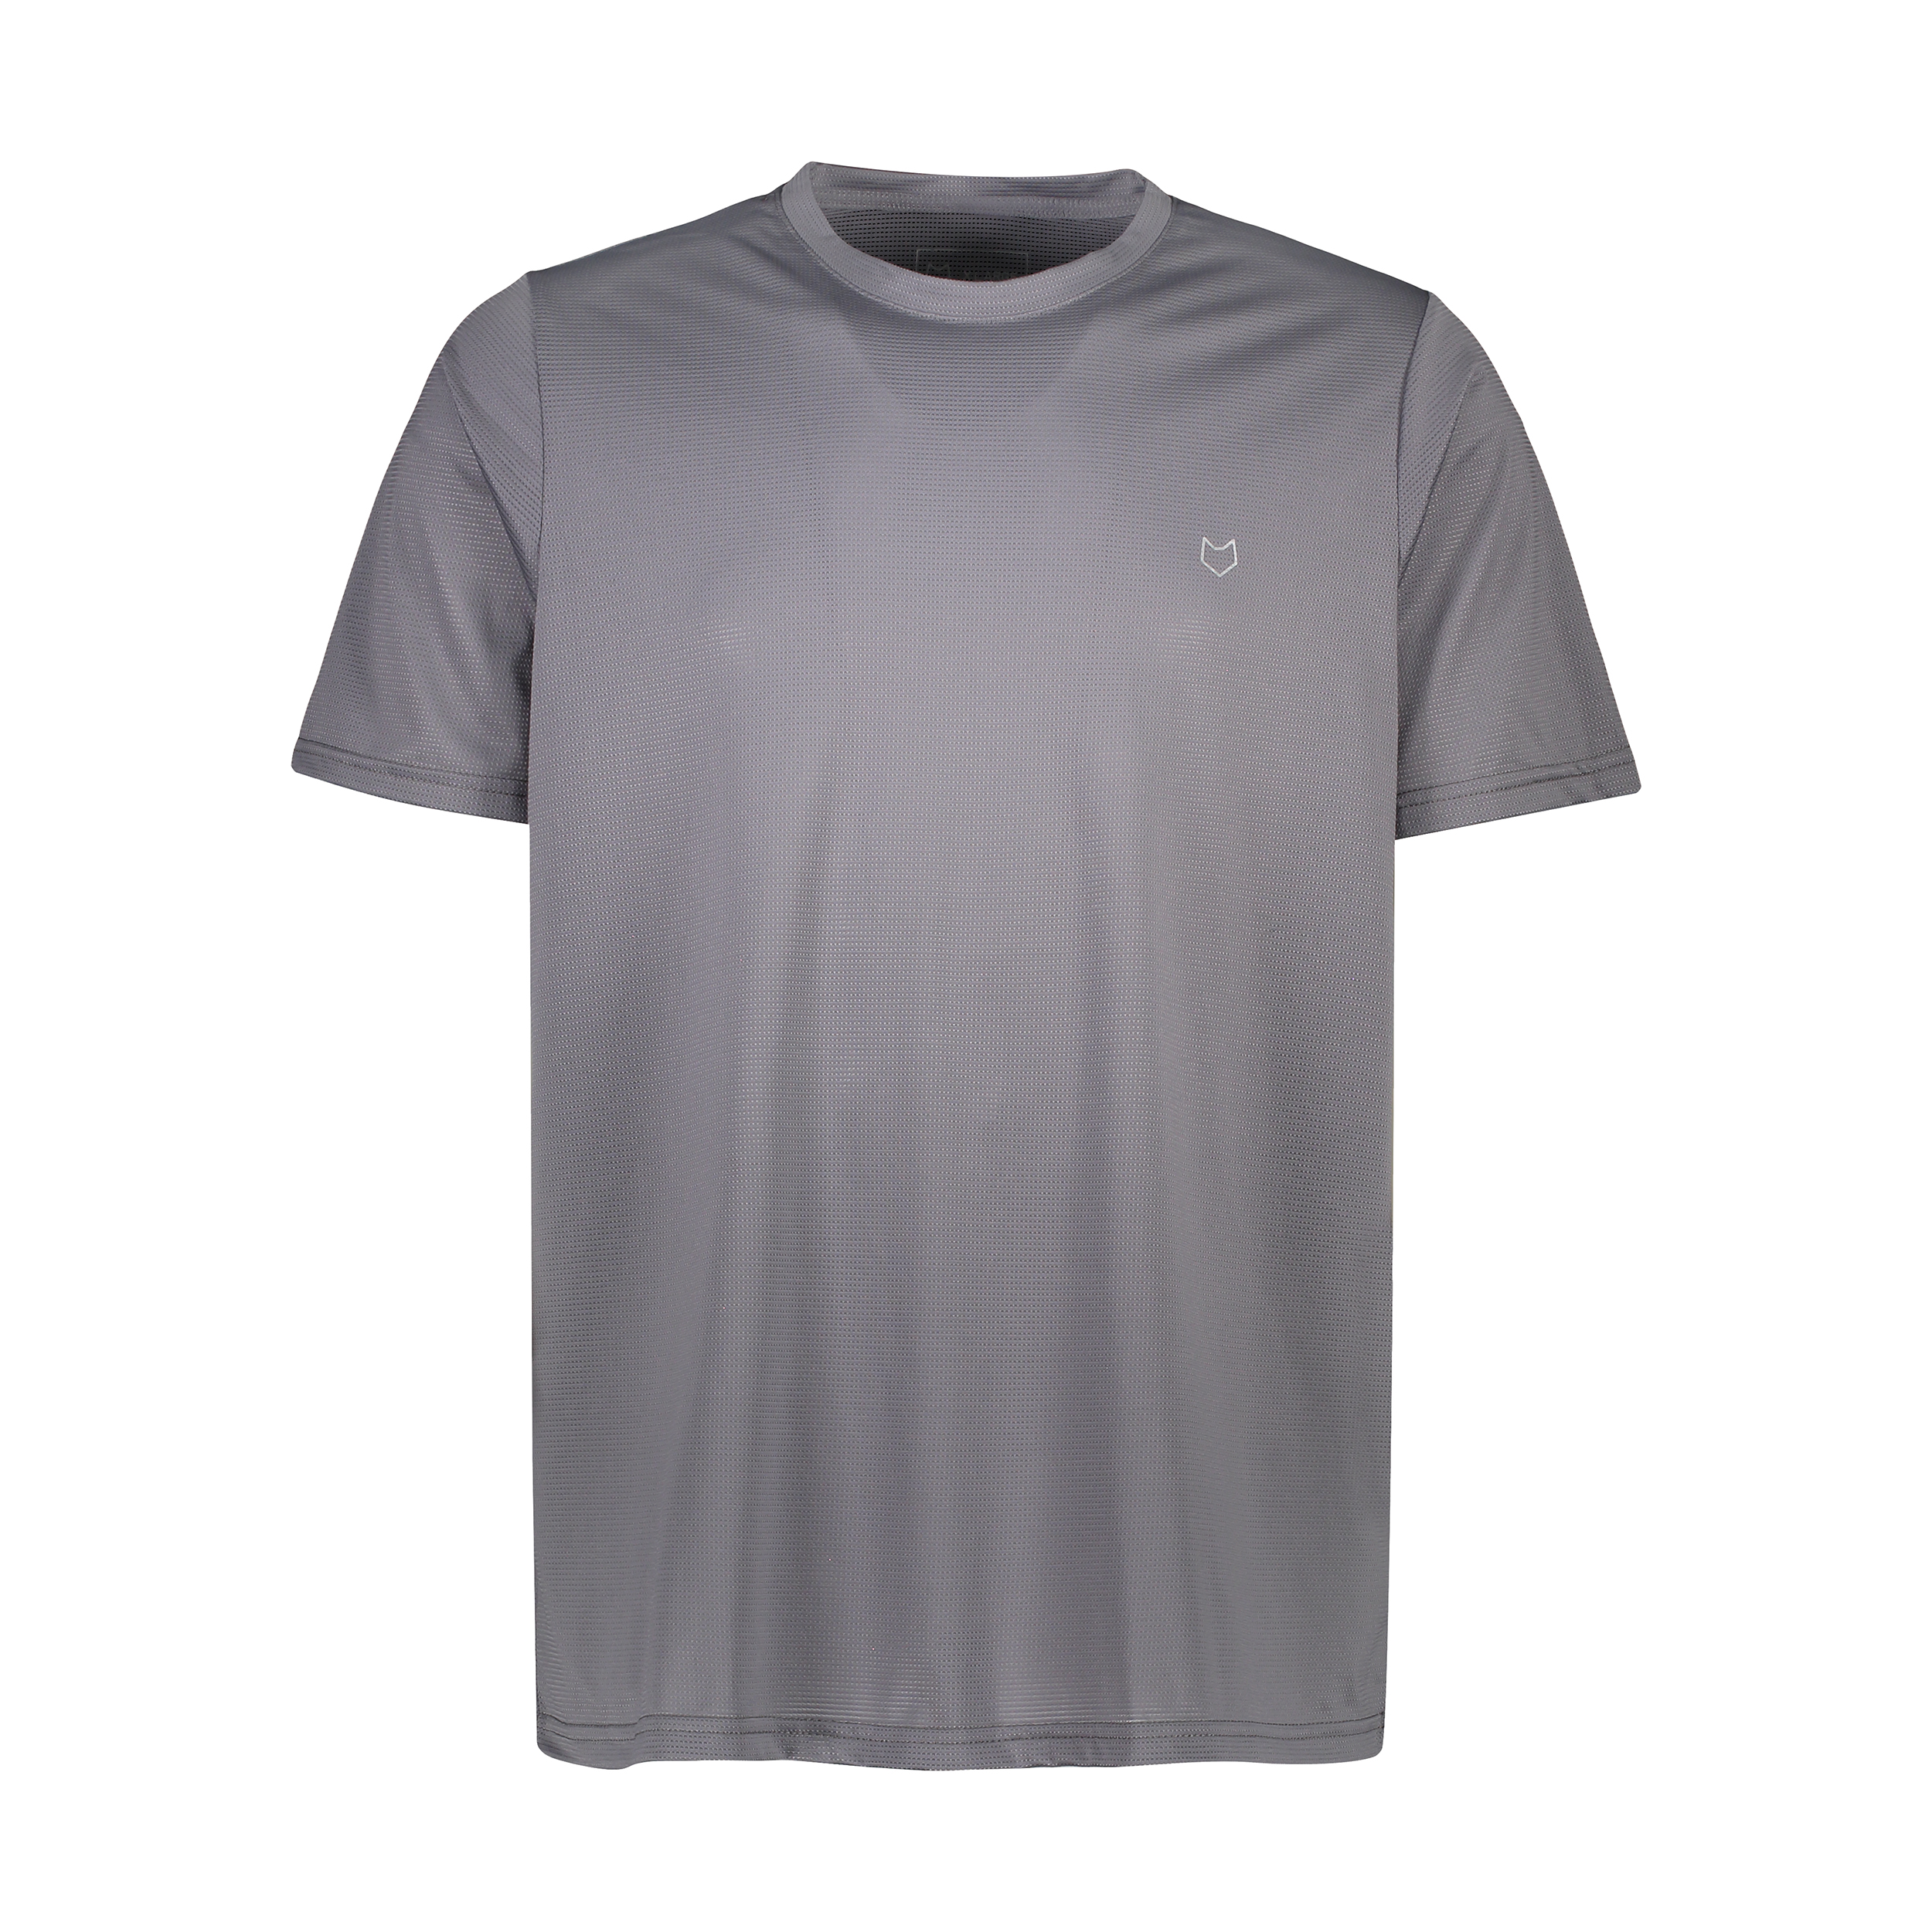 تی شرت آستین کوتاه ورزشی مردانه مل اند موژ مدل M07948-103